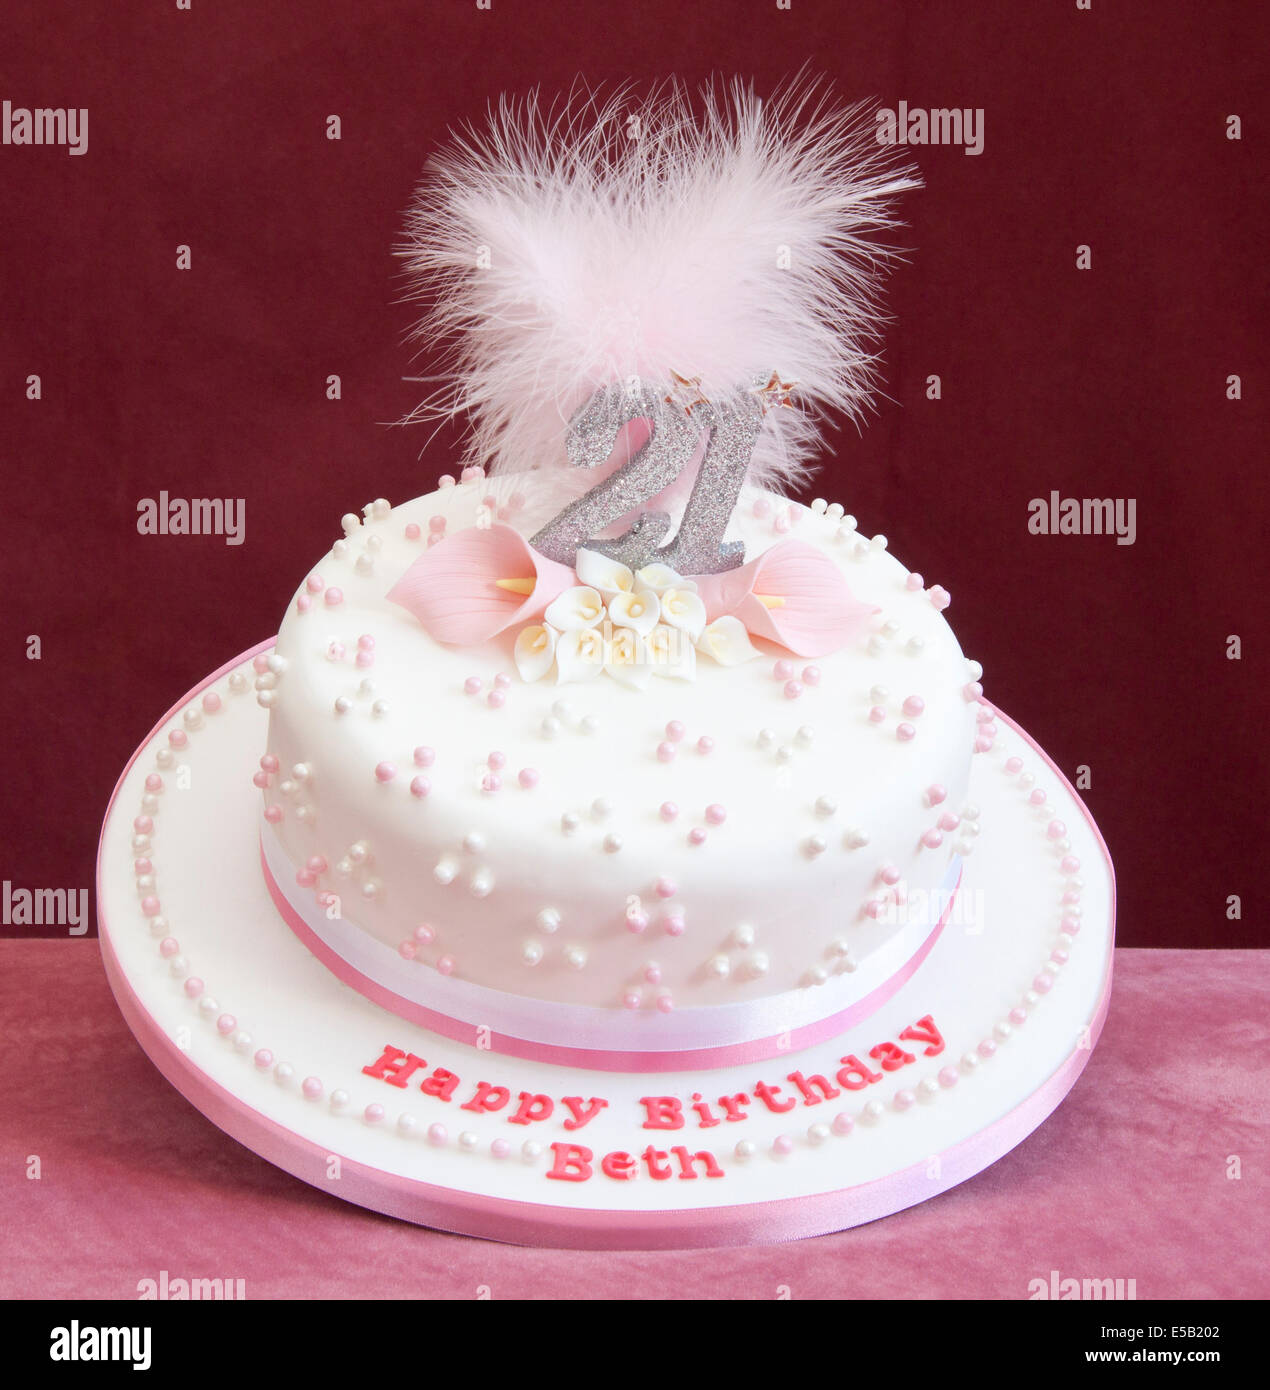 21st birthday celebration cake. Stock Photo